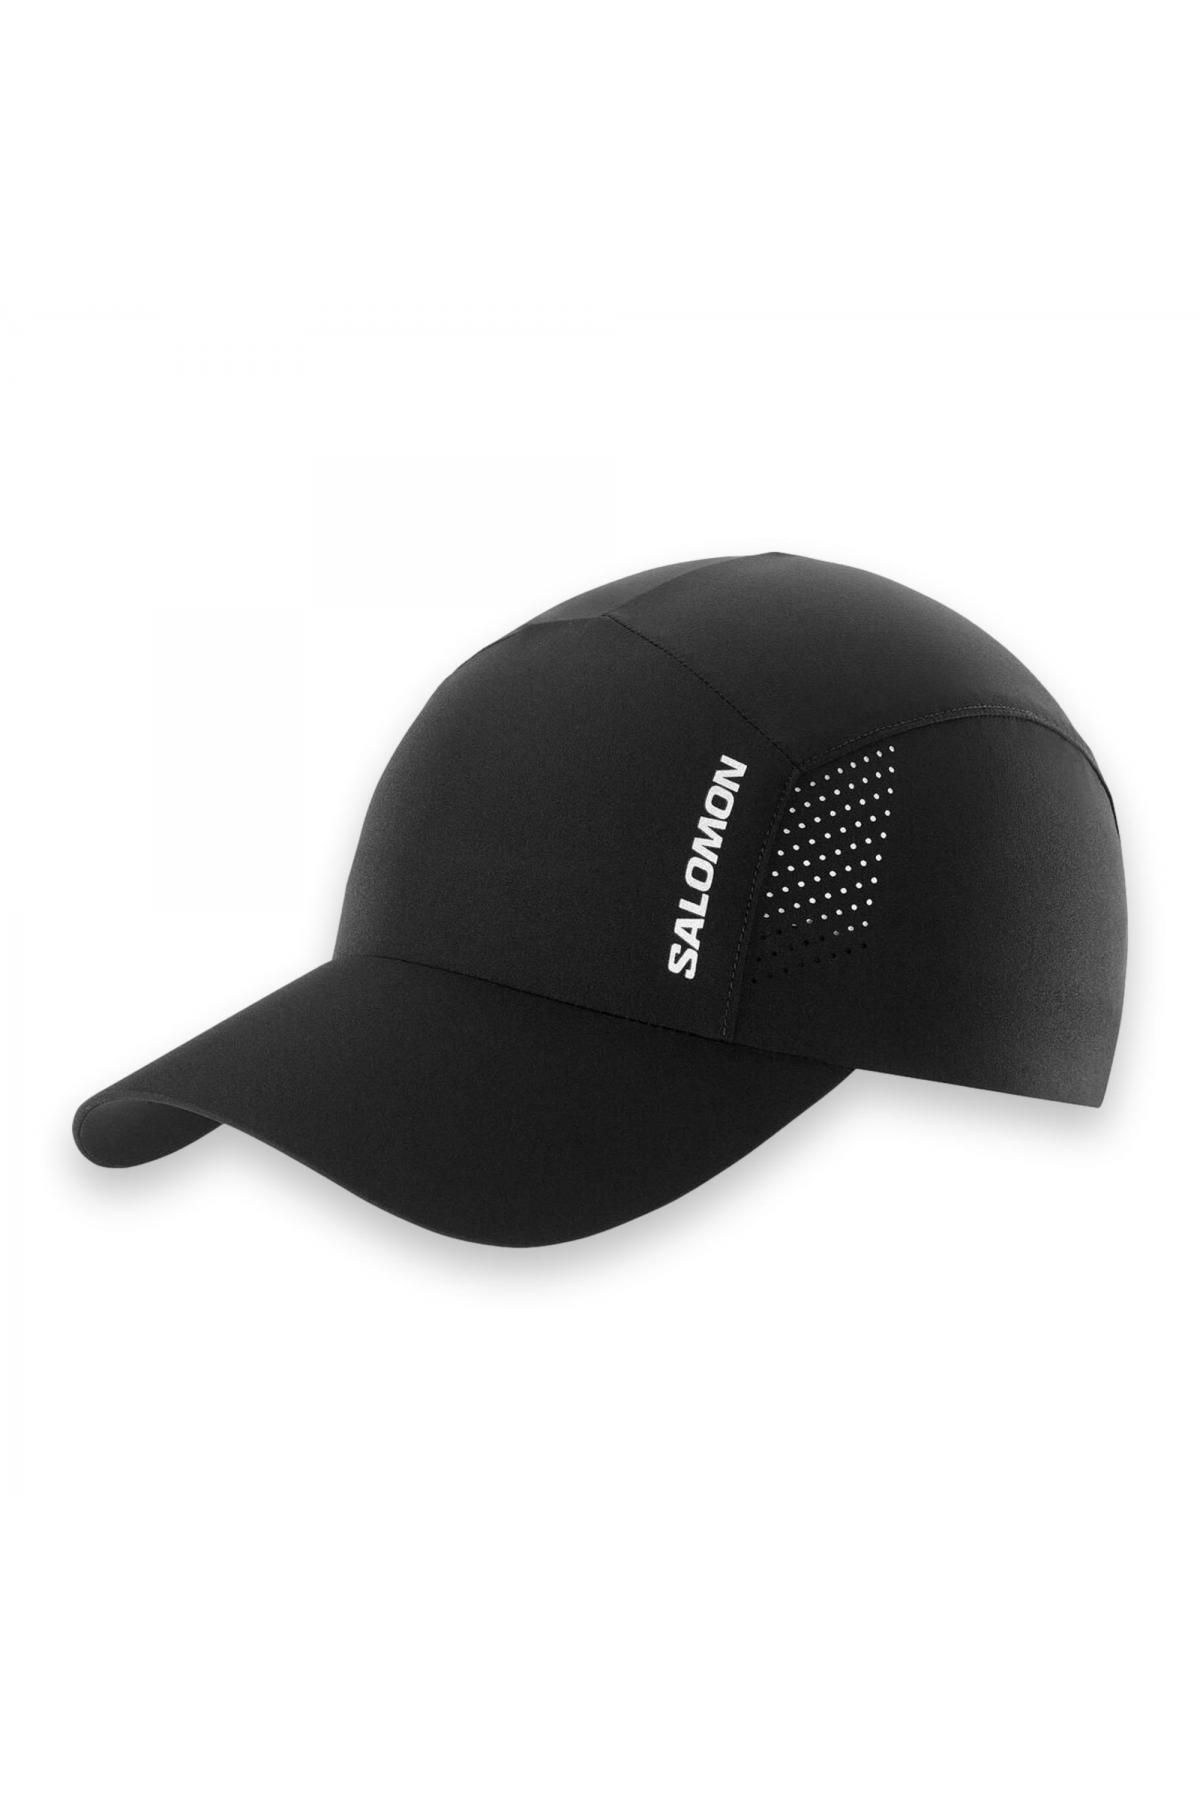 Salomon Lc2022000 Cross Cap Siyah Unisex Şapka